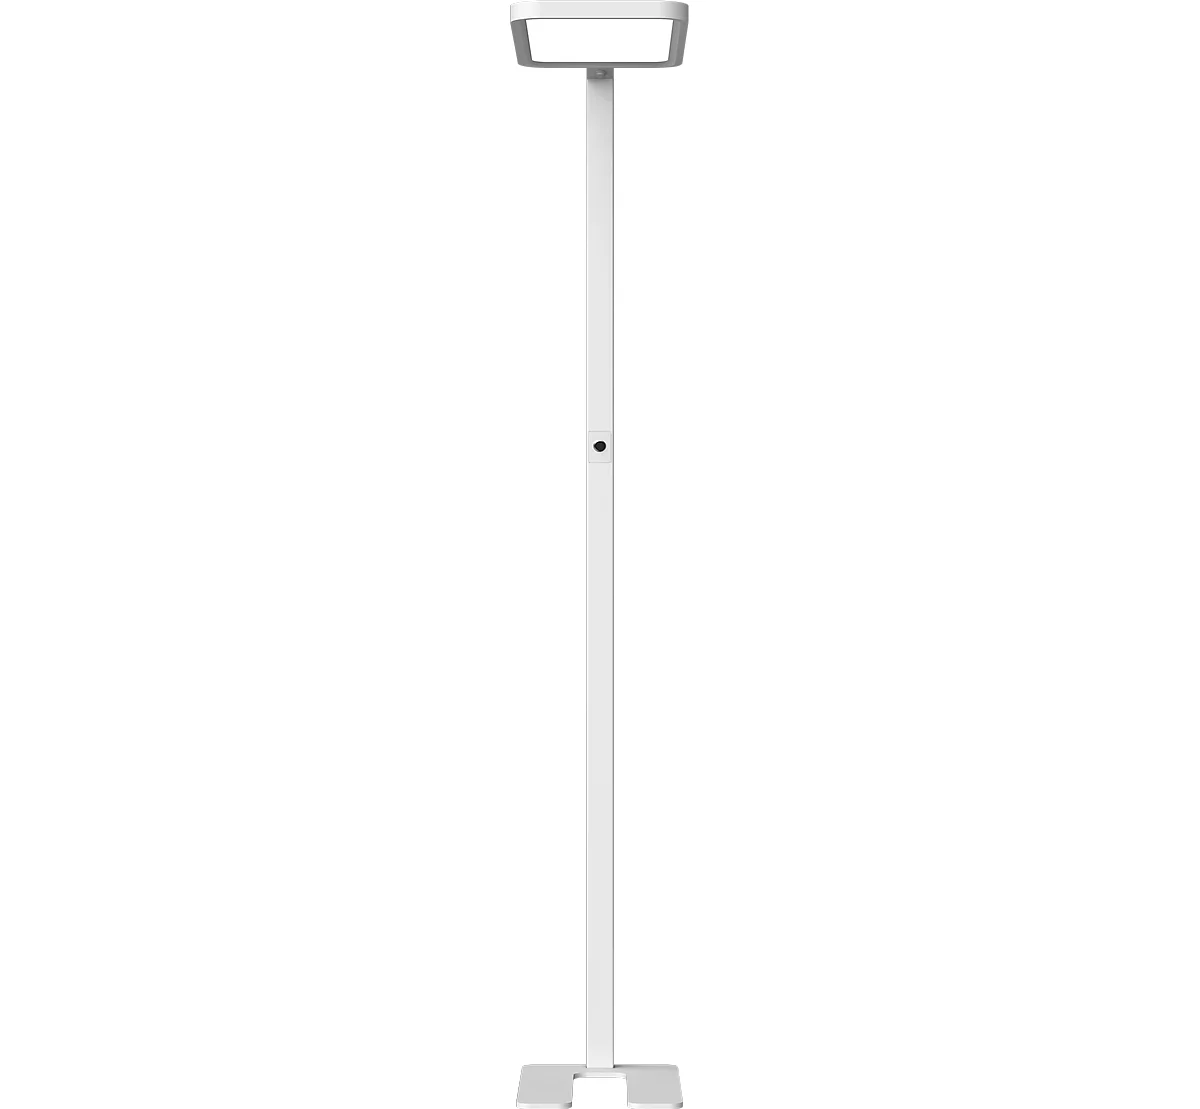 Luminaria de suelo Butler LED, 80 W, 8800 lm, 4000 K, adecuada para puestos de trabajo VDU, iluminación directa/indirecta, regulable sin escalonamiento, sensor de movimiento, plata